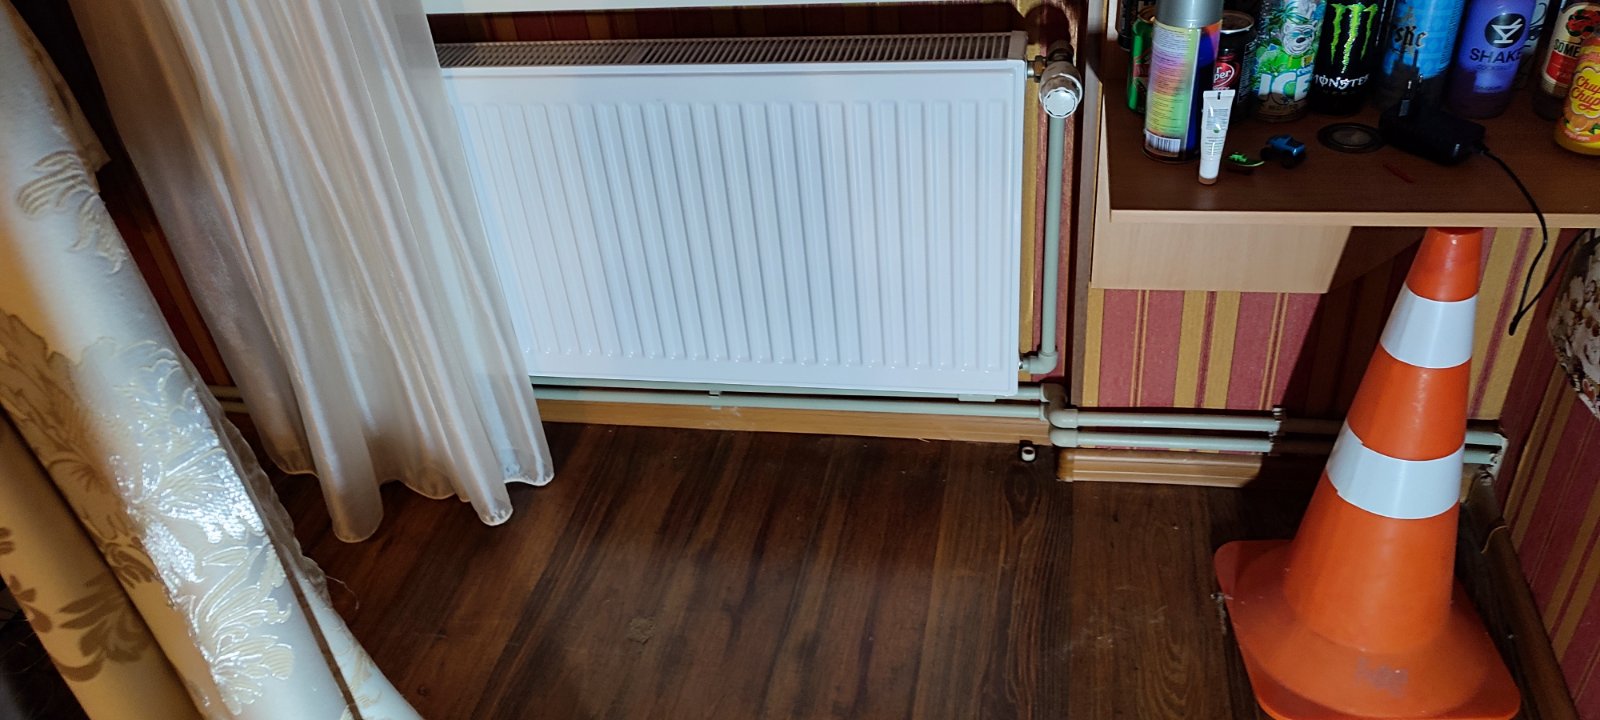 Монтаж панельных радиаторов в магазине - фото 17